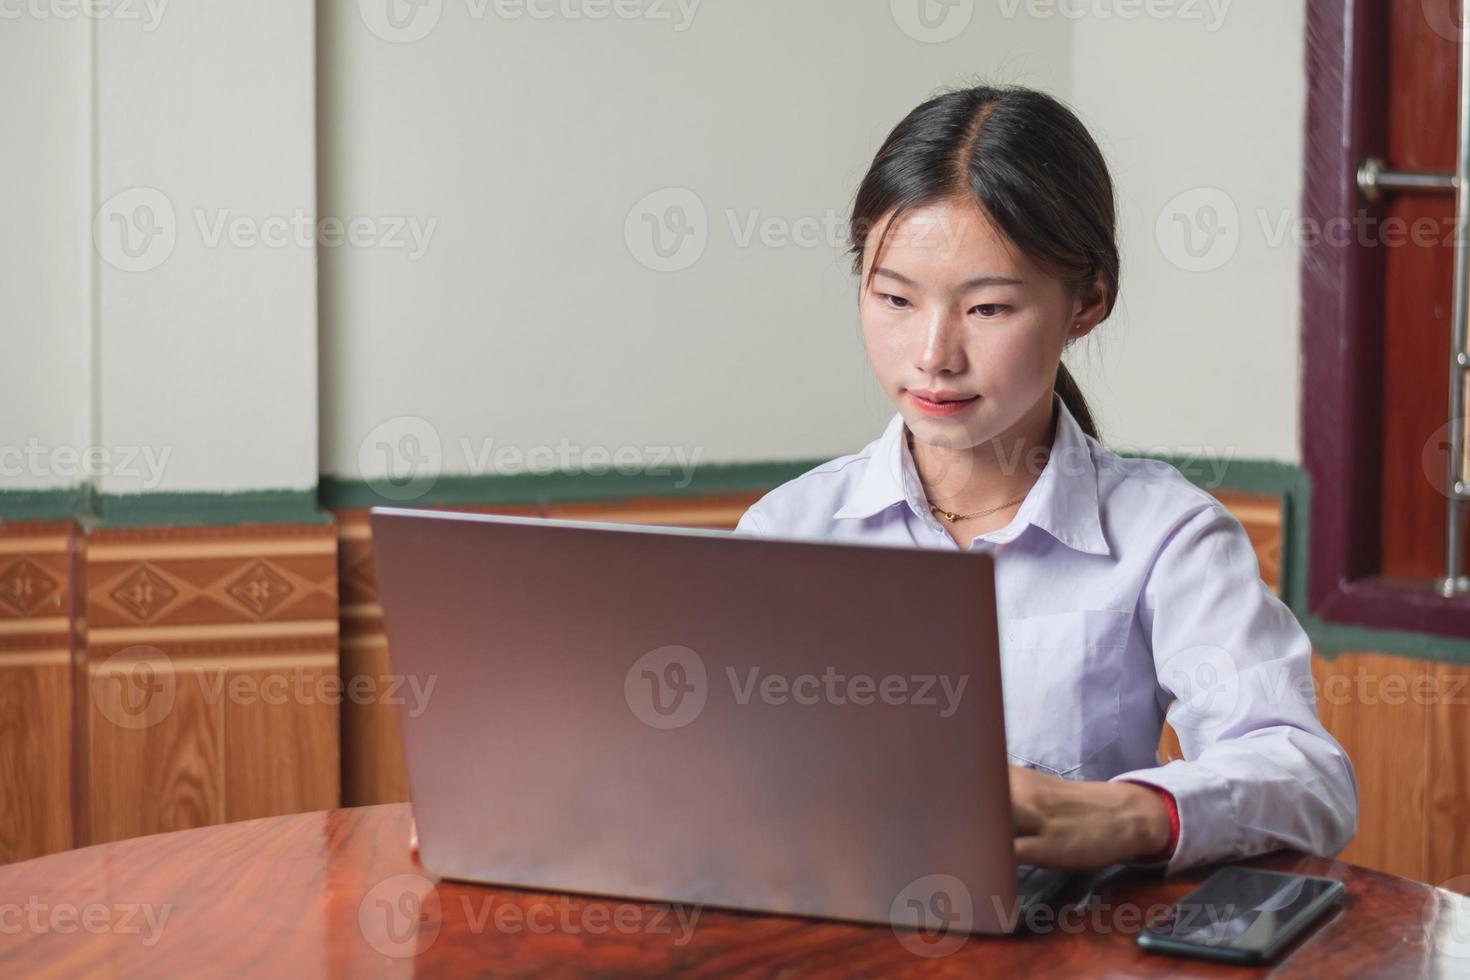 una estudiante con traje de estudiante de camisa blanca está escribiendo y aprendiendo en línea desde una computadora portátil en la casa, usando una computadora portátil e Internet inalámbrico en el escritorio. concepto de educación y estudio, toma de espacio de copia foto